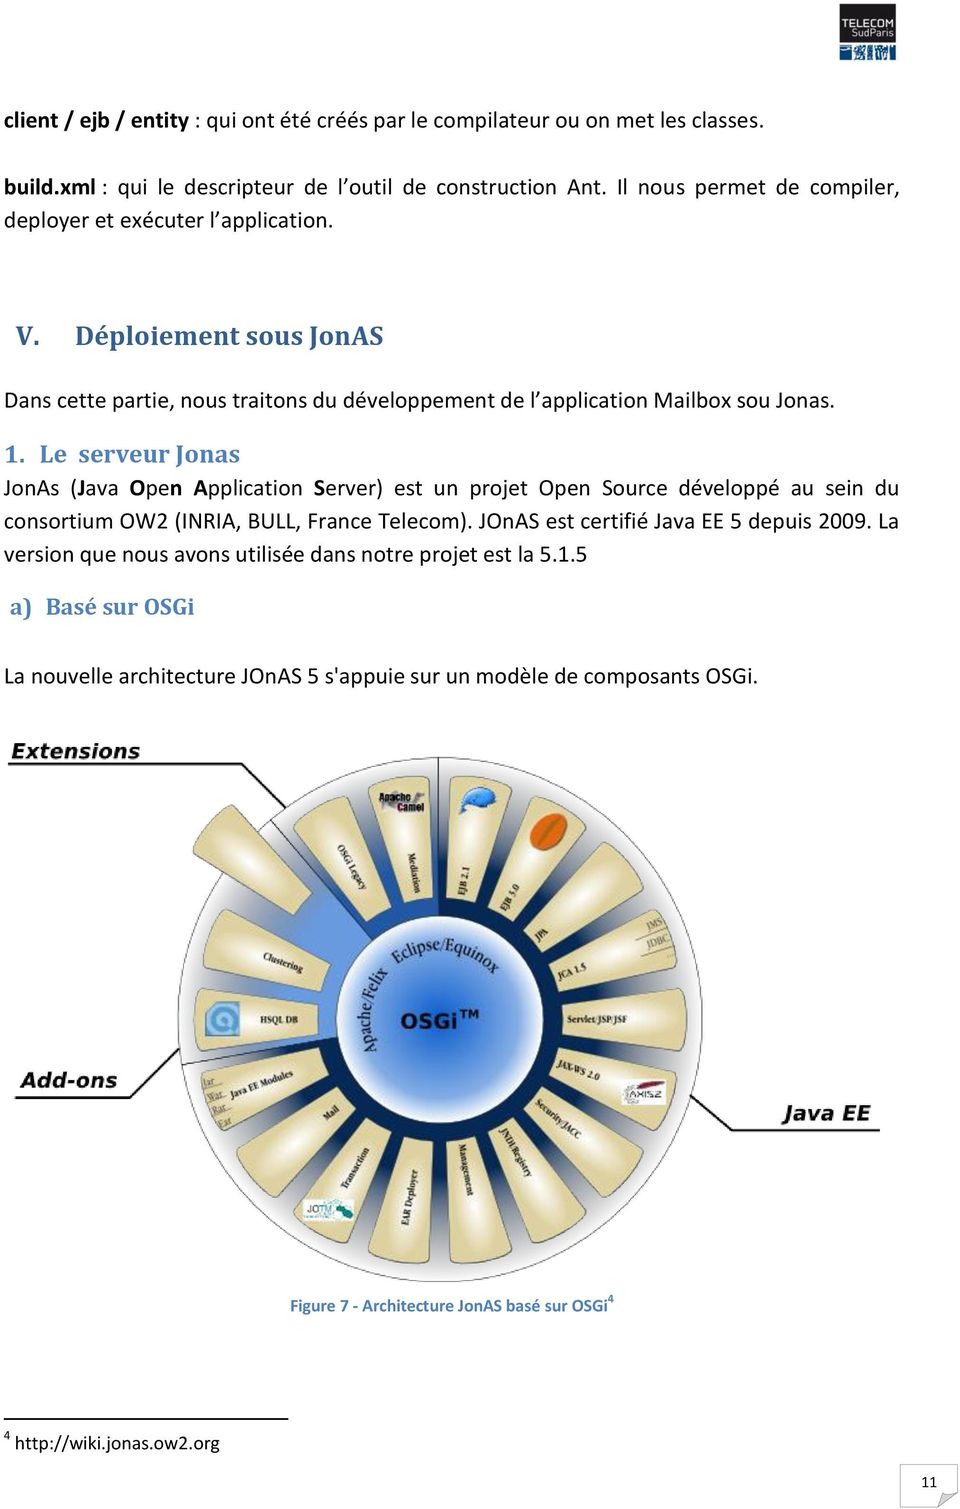 Le serveur Jonas JonAs (Java Open Application Server) est un projet Open Source développé au sein du consortium OW2 (INRIA, BULL, France Telecom). JOnAS est certifié Java EE 5 depuis 2009.